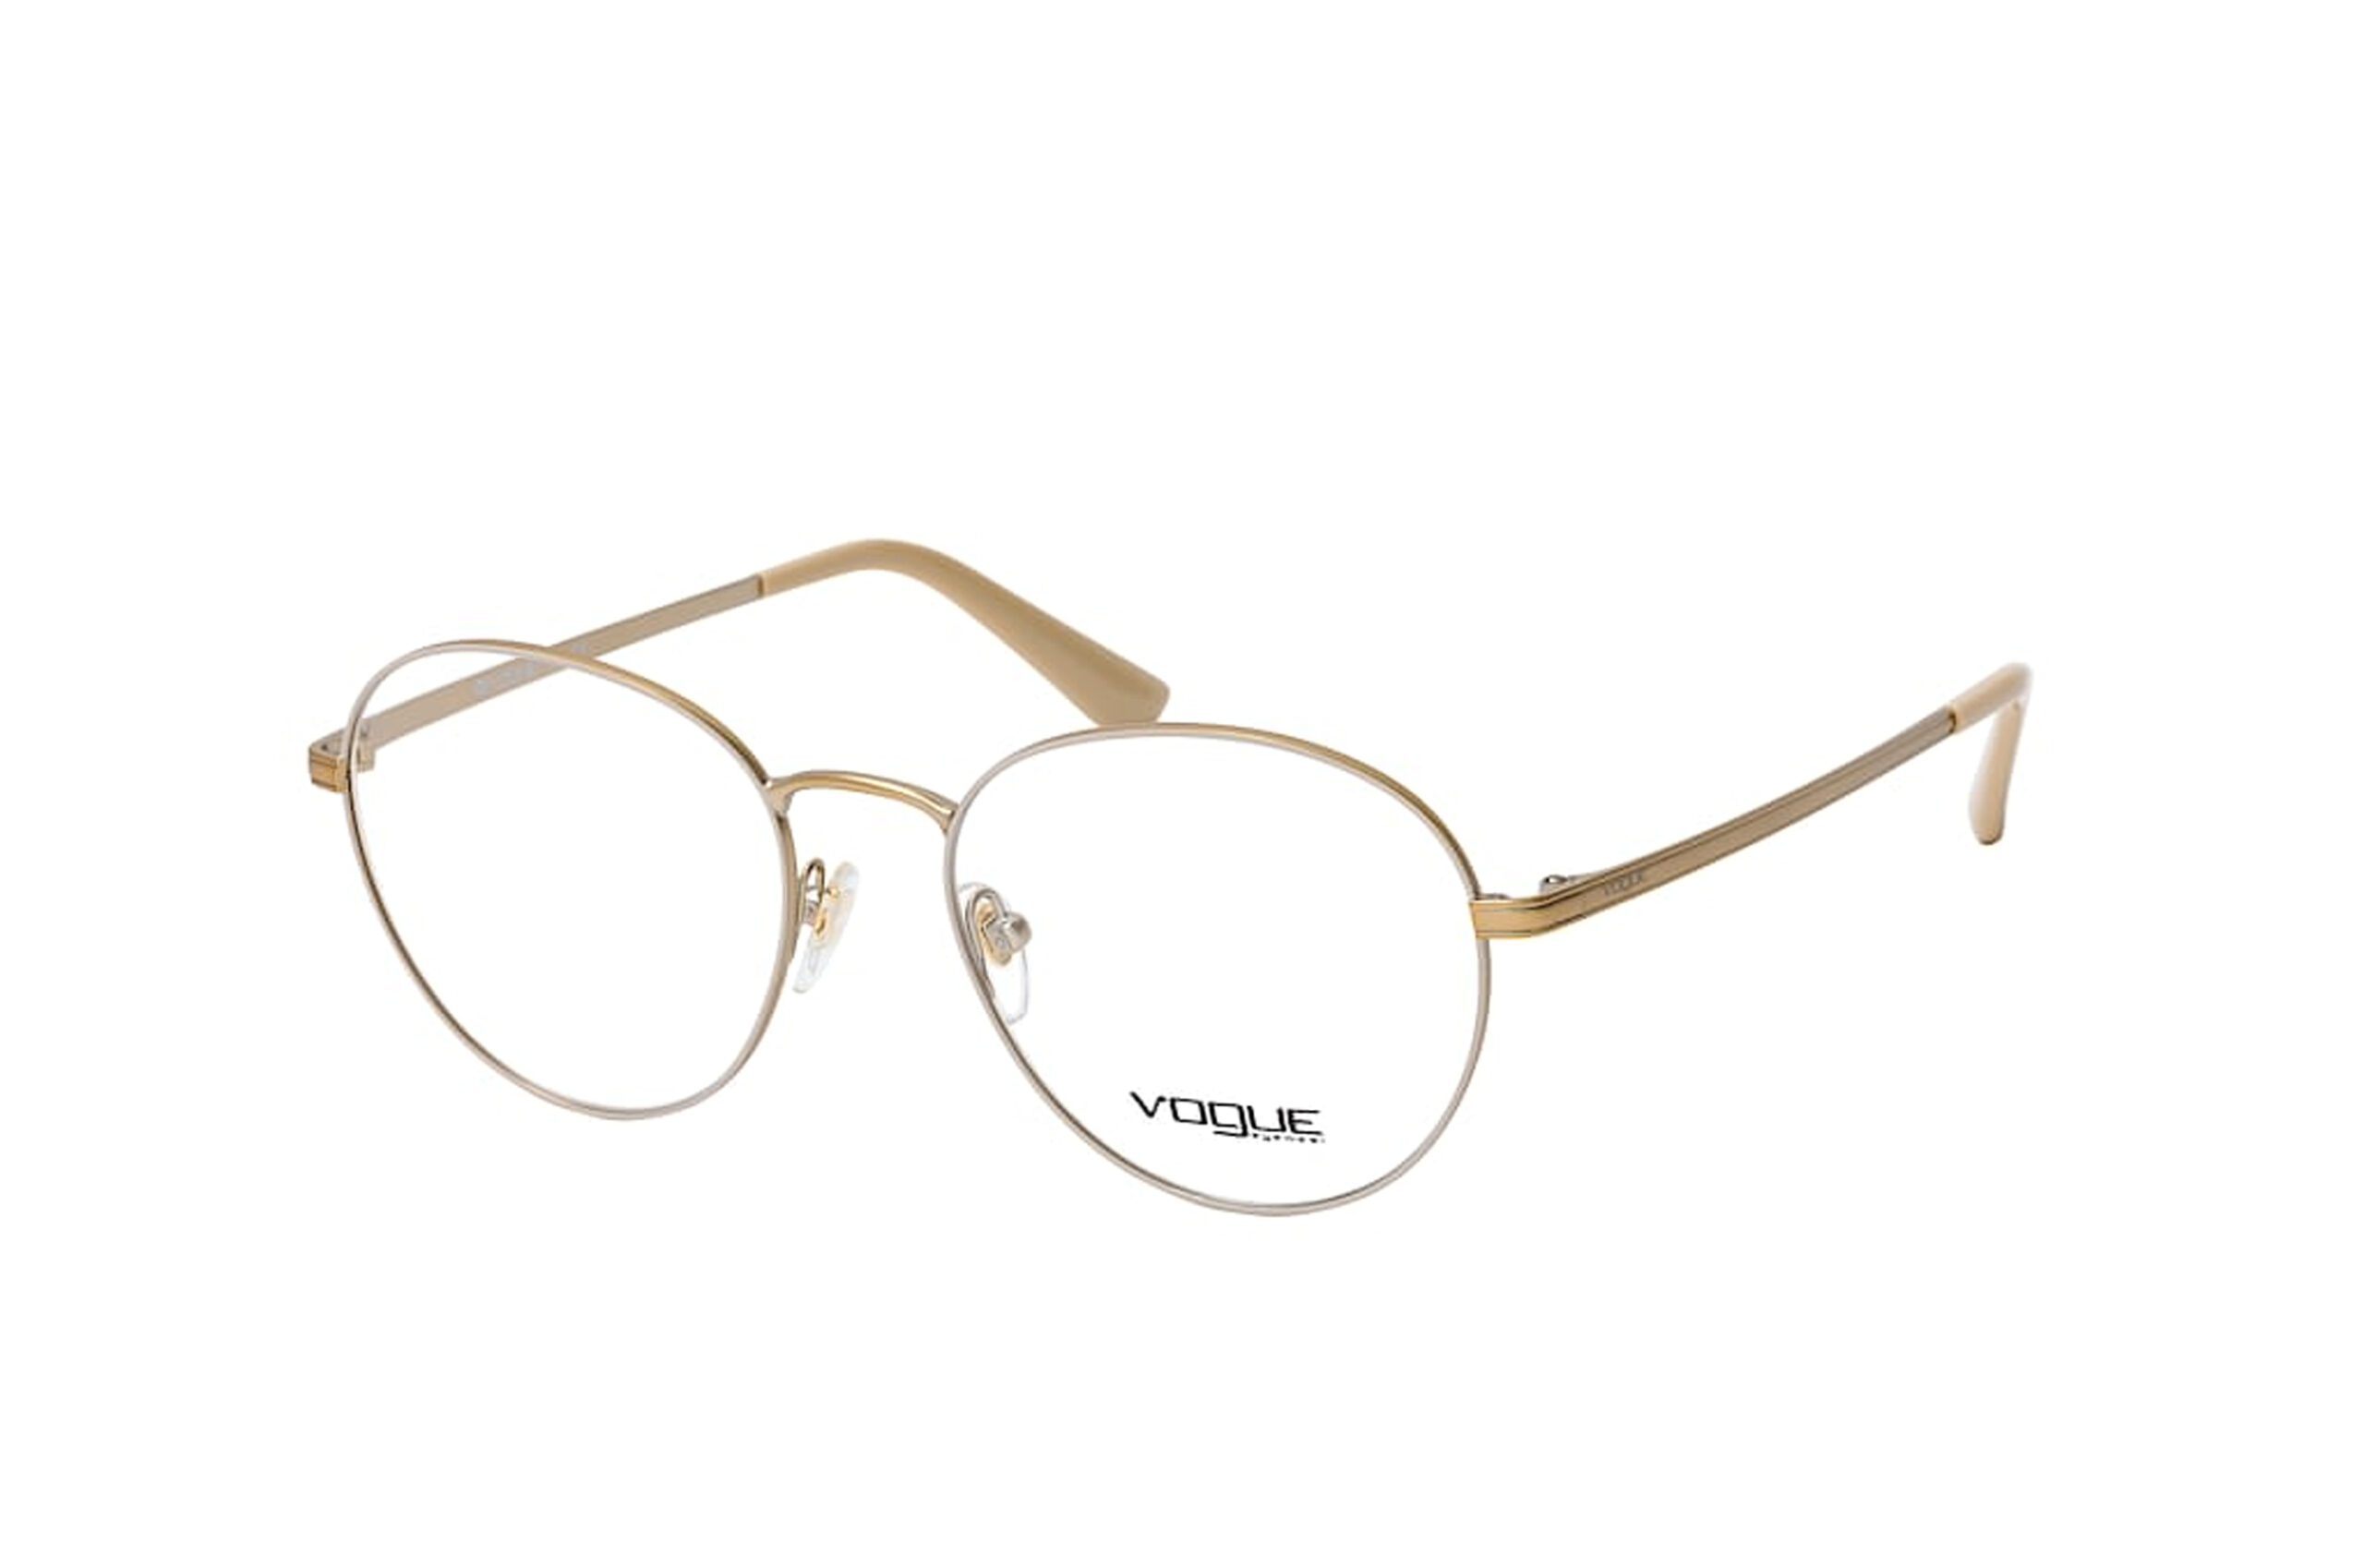 Vogue Gafas Graduadas para Mujer – Opticalia, online